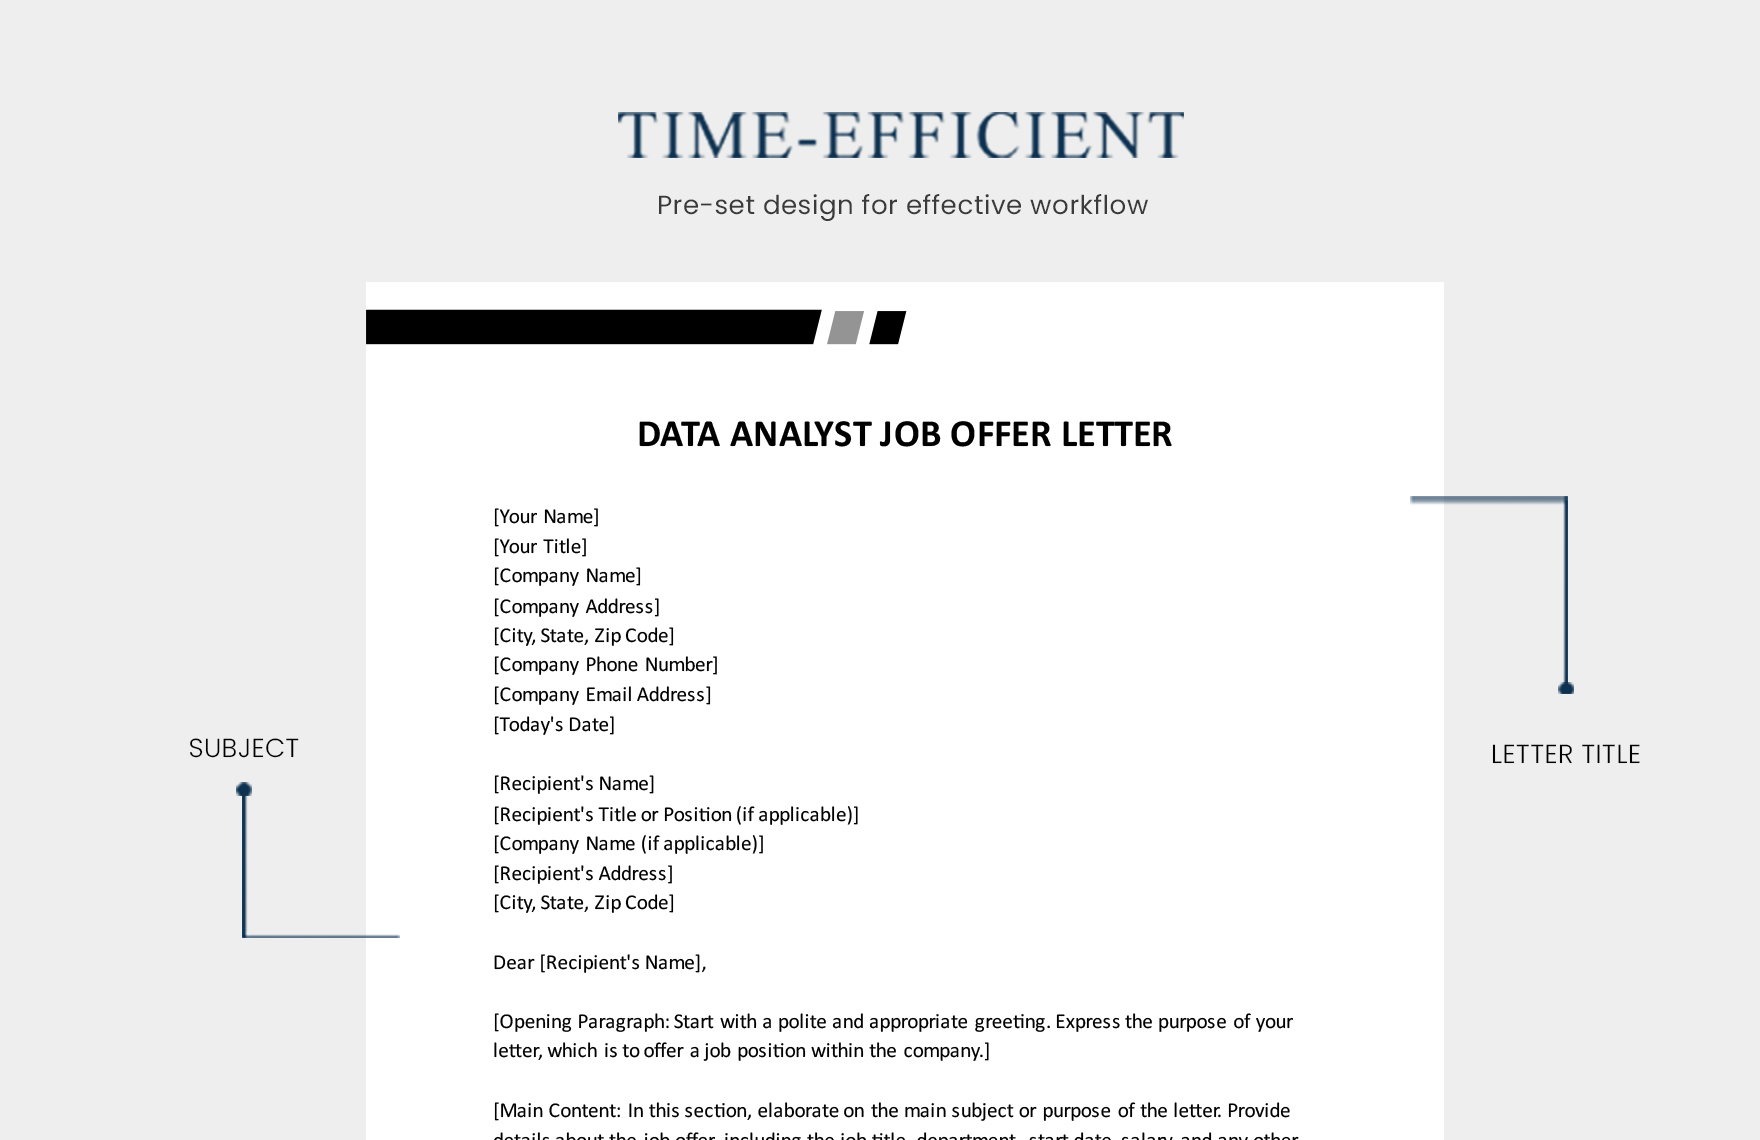 Data Analyst Job Offer Letter